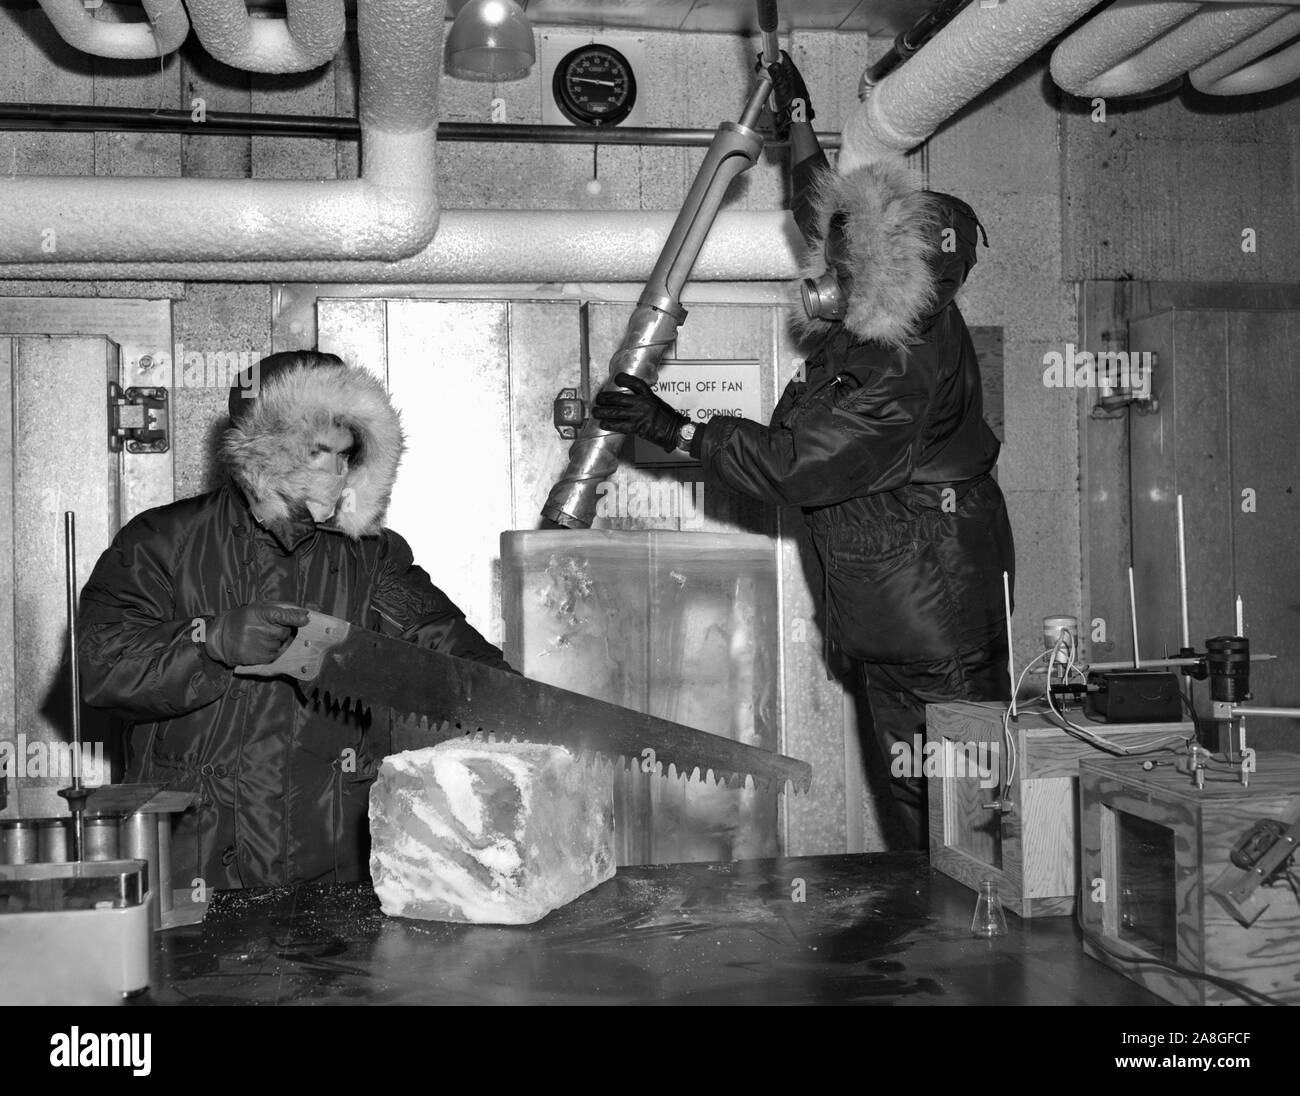 Les travailleurs dans un laboratoire de recherche à Chicago travailler avec bloc de glace dans un environnement froid, super ca. 1955. Banque D'Images